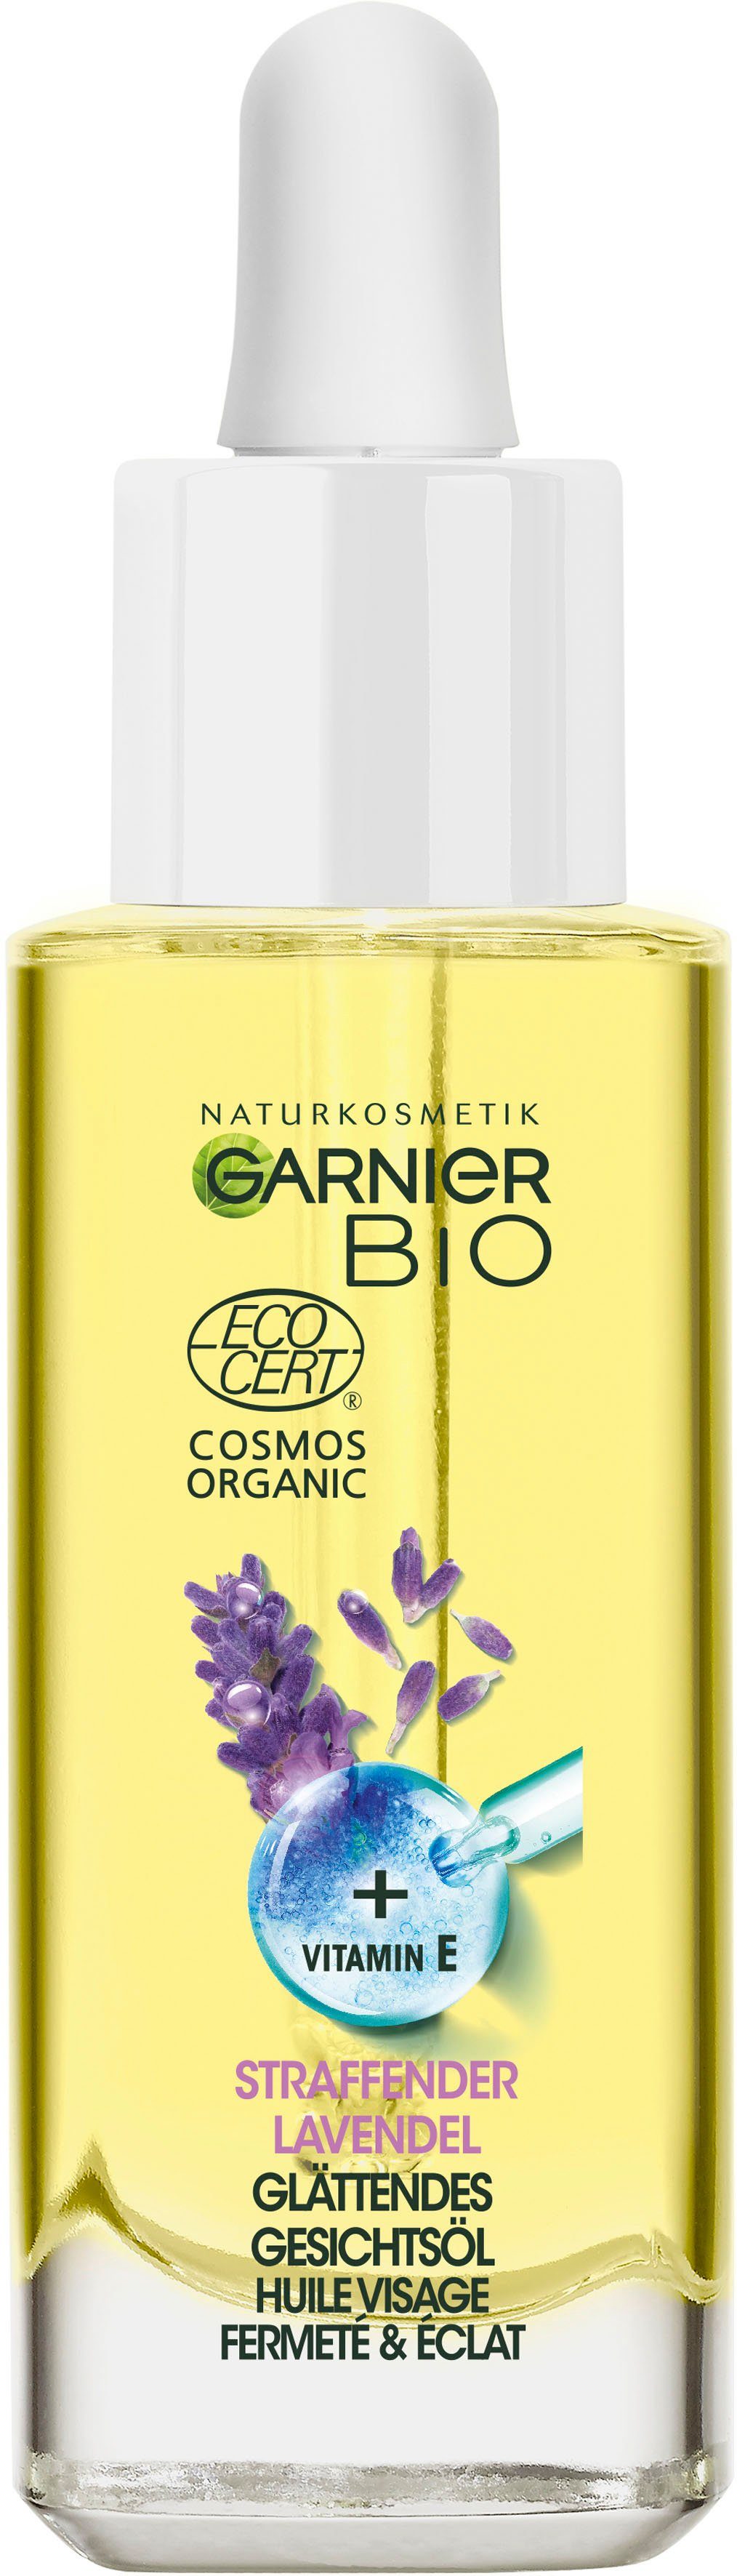 GARNIER Bio Gesichtsöl Lavendel